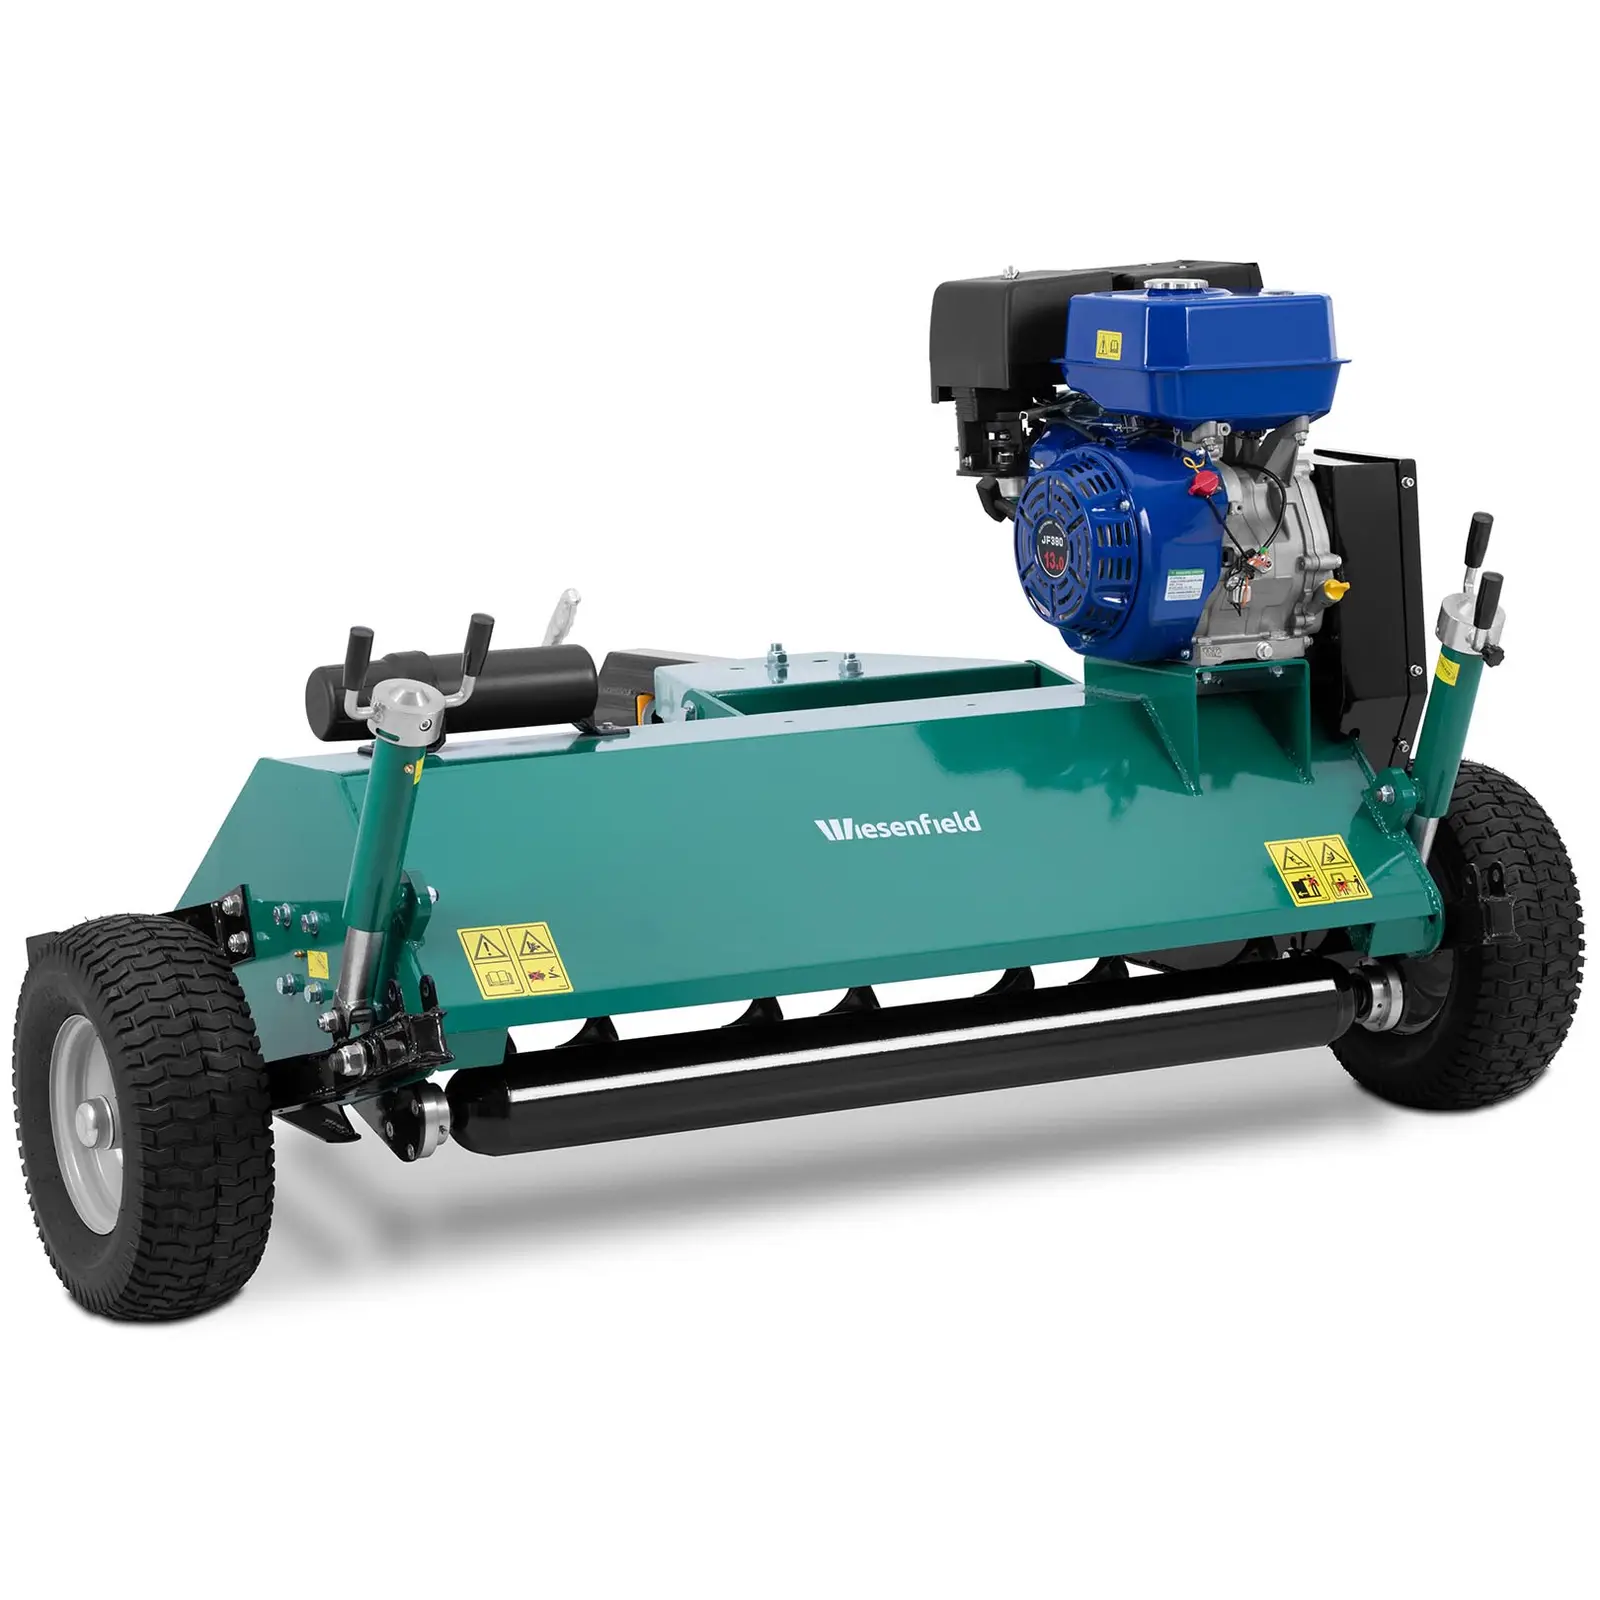 ATV szárzúzó - benzinmotor - 10 kW - vonóhorog + gömbfej (Ø 80 mm) - 1200 mm-es szélesség